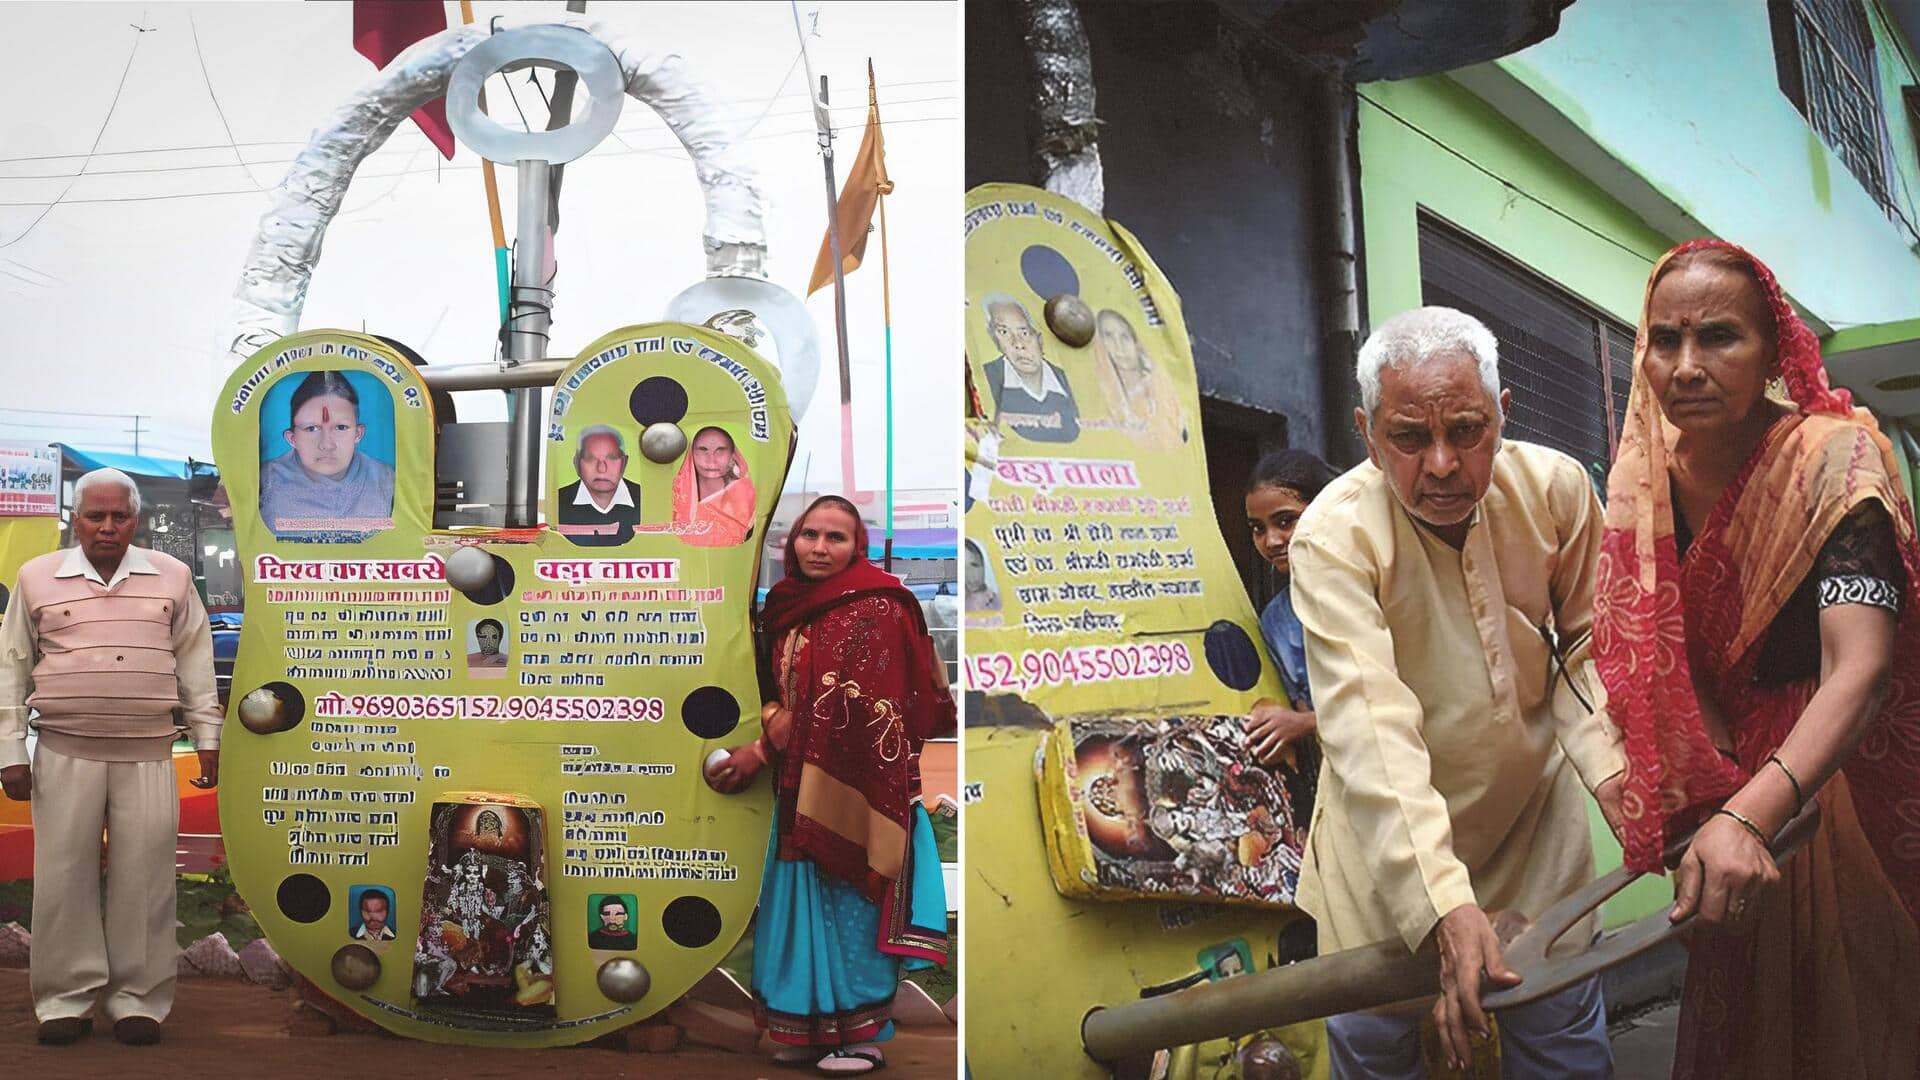 Elderly artisan makes world's largest 400kg lock for Ram Mandir